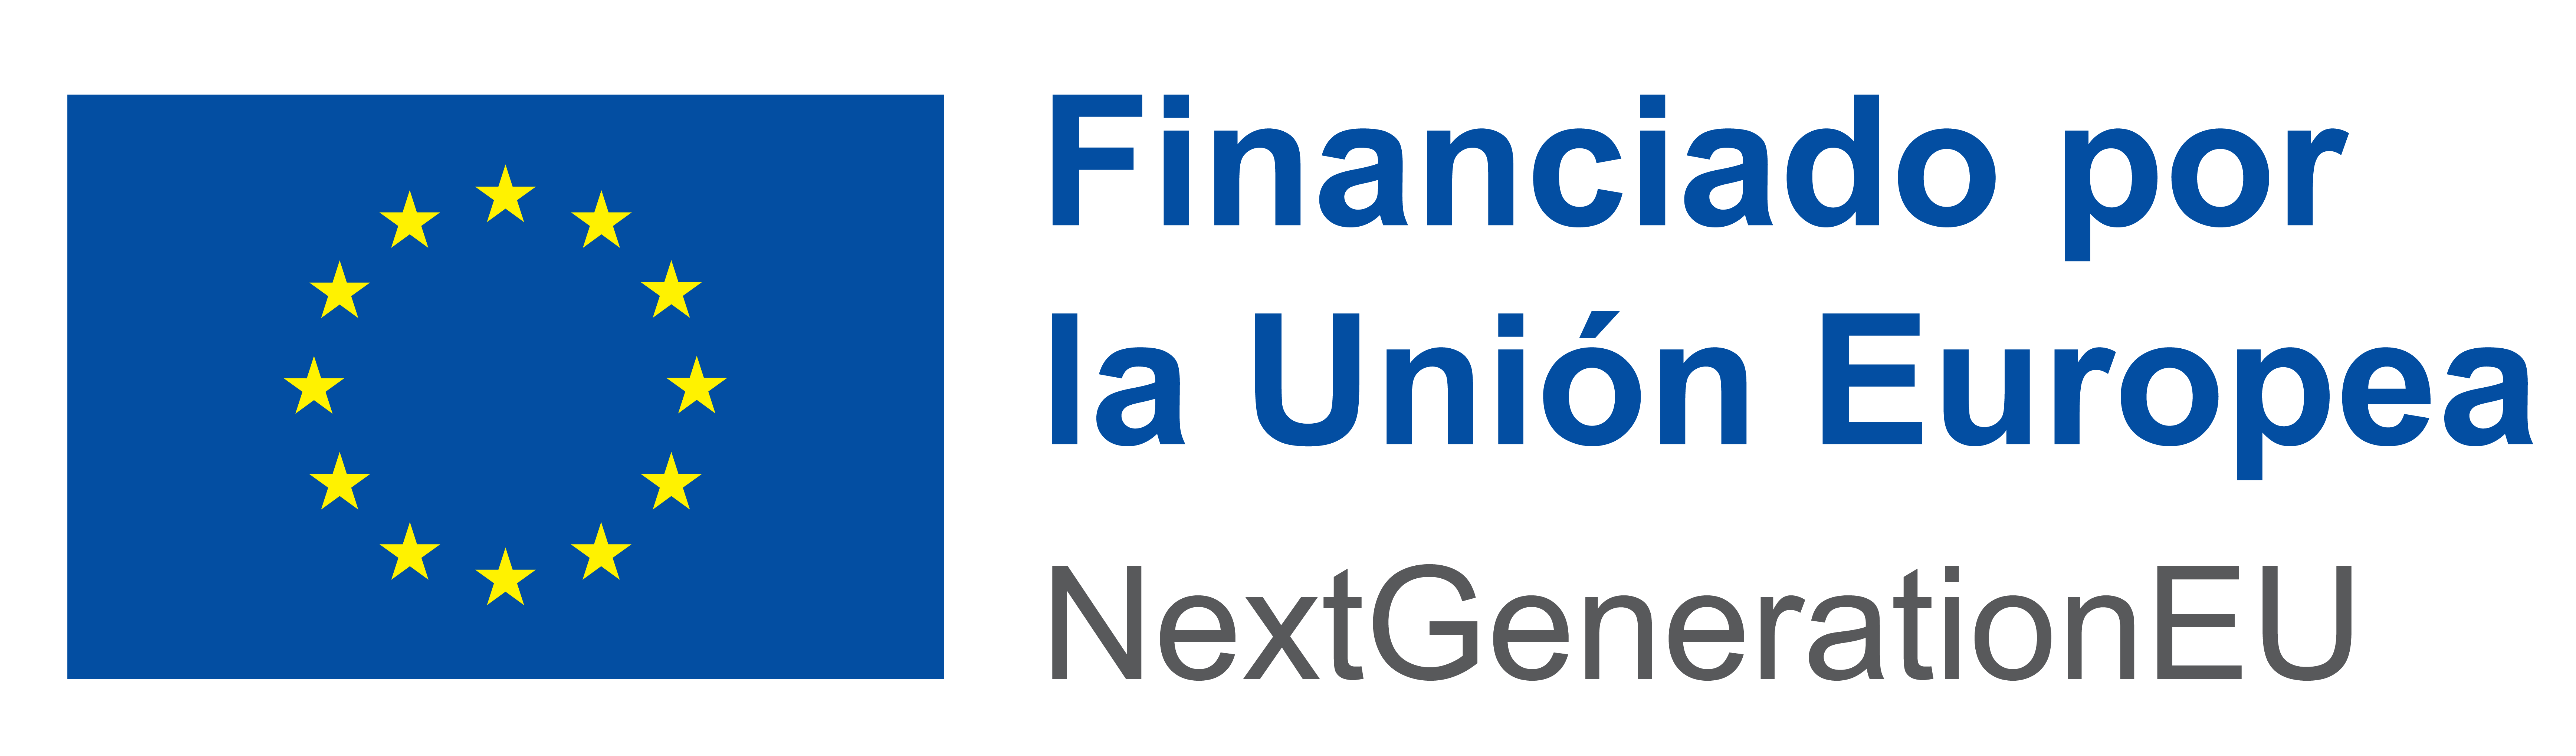 Logo UE. Financiado por la Unión Europea